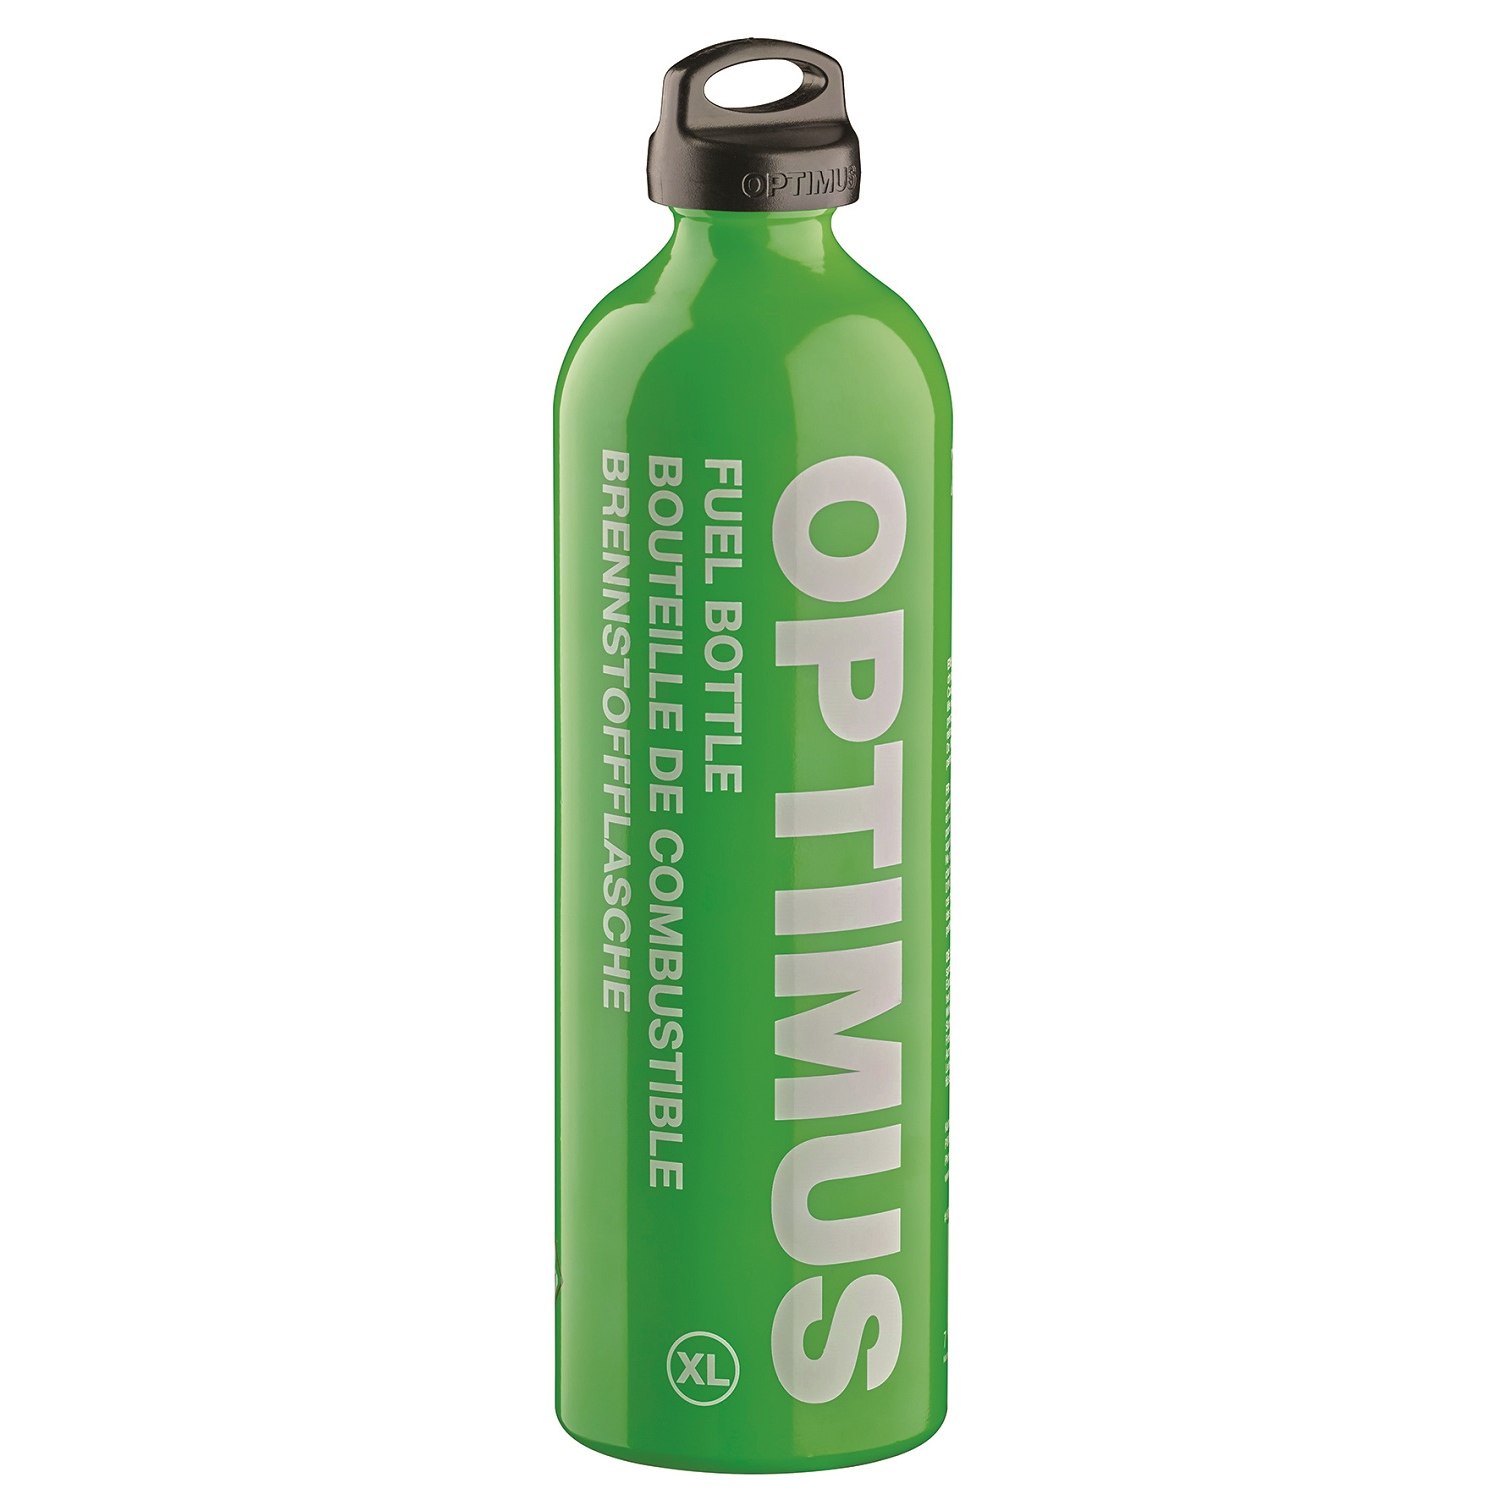 Produktbild von Optimus Brennstoffflasche XL 1.5 L